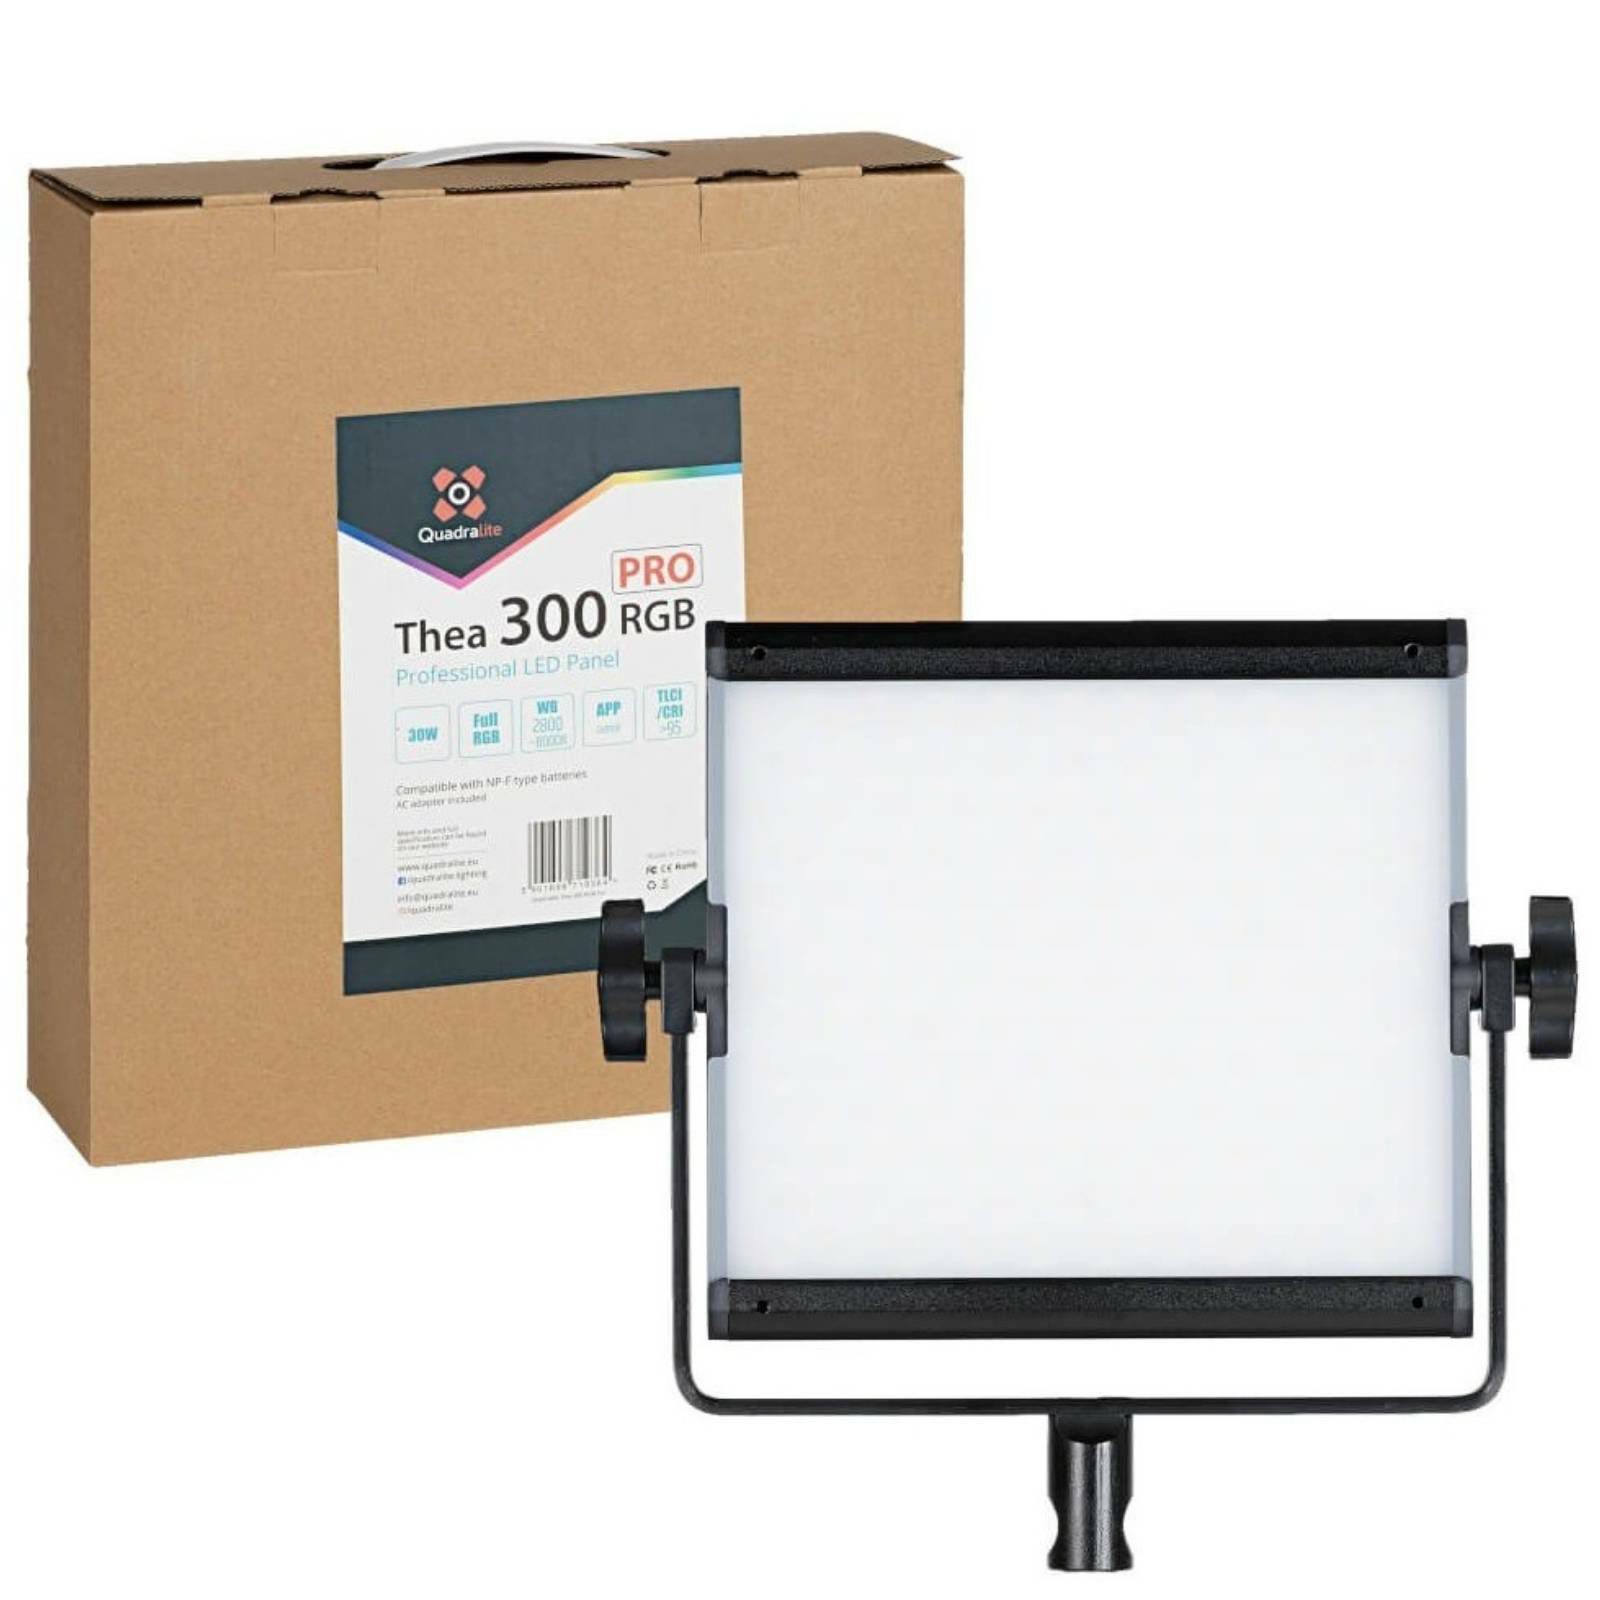 Quadralite Thea 300 Pro LED Panel RGB Kit